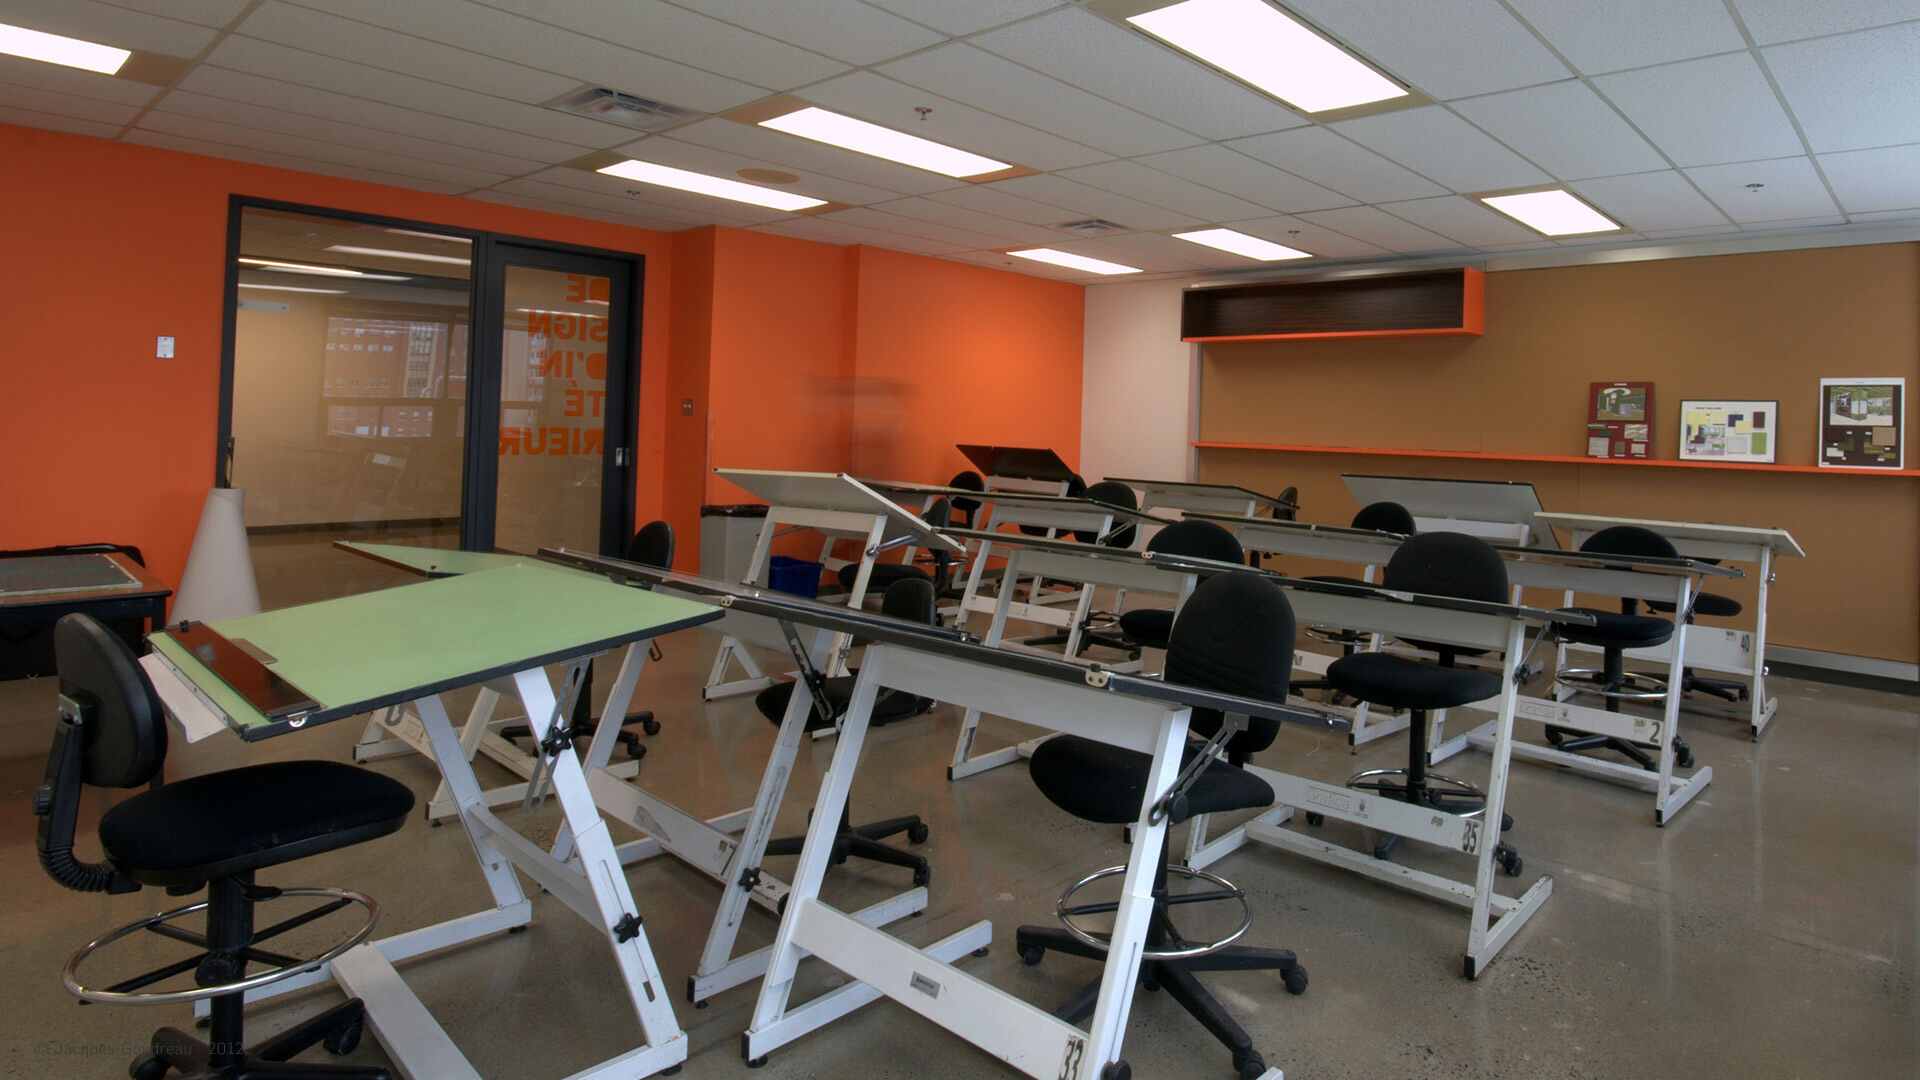 Une salle de dessin technique éducative avec planches à dessin et tabourets, vide et prête pour un cours d'art.